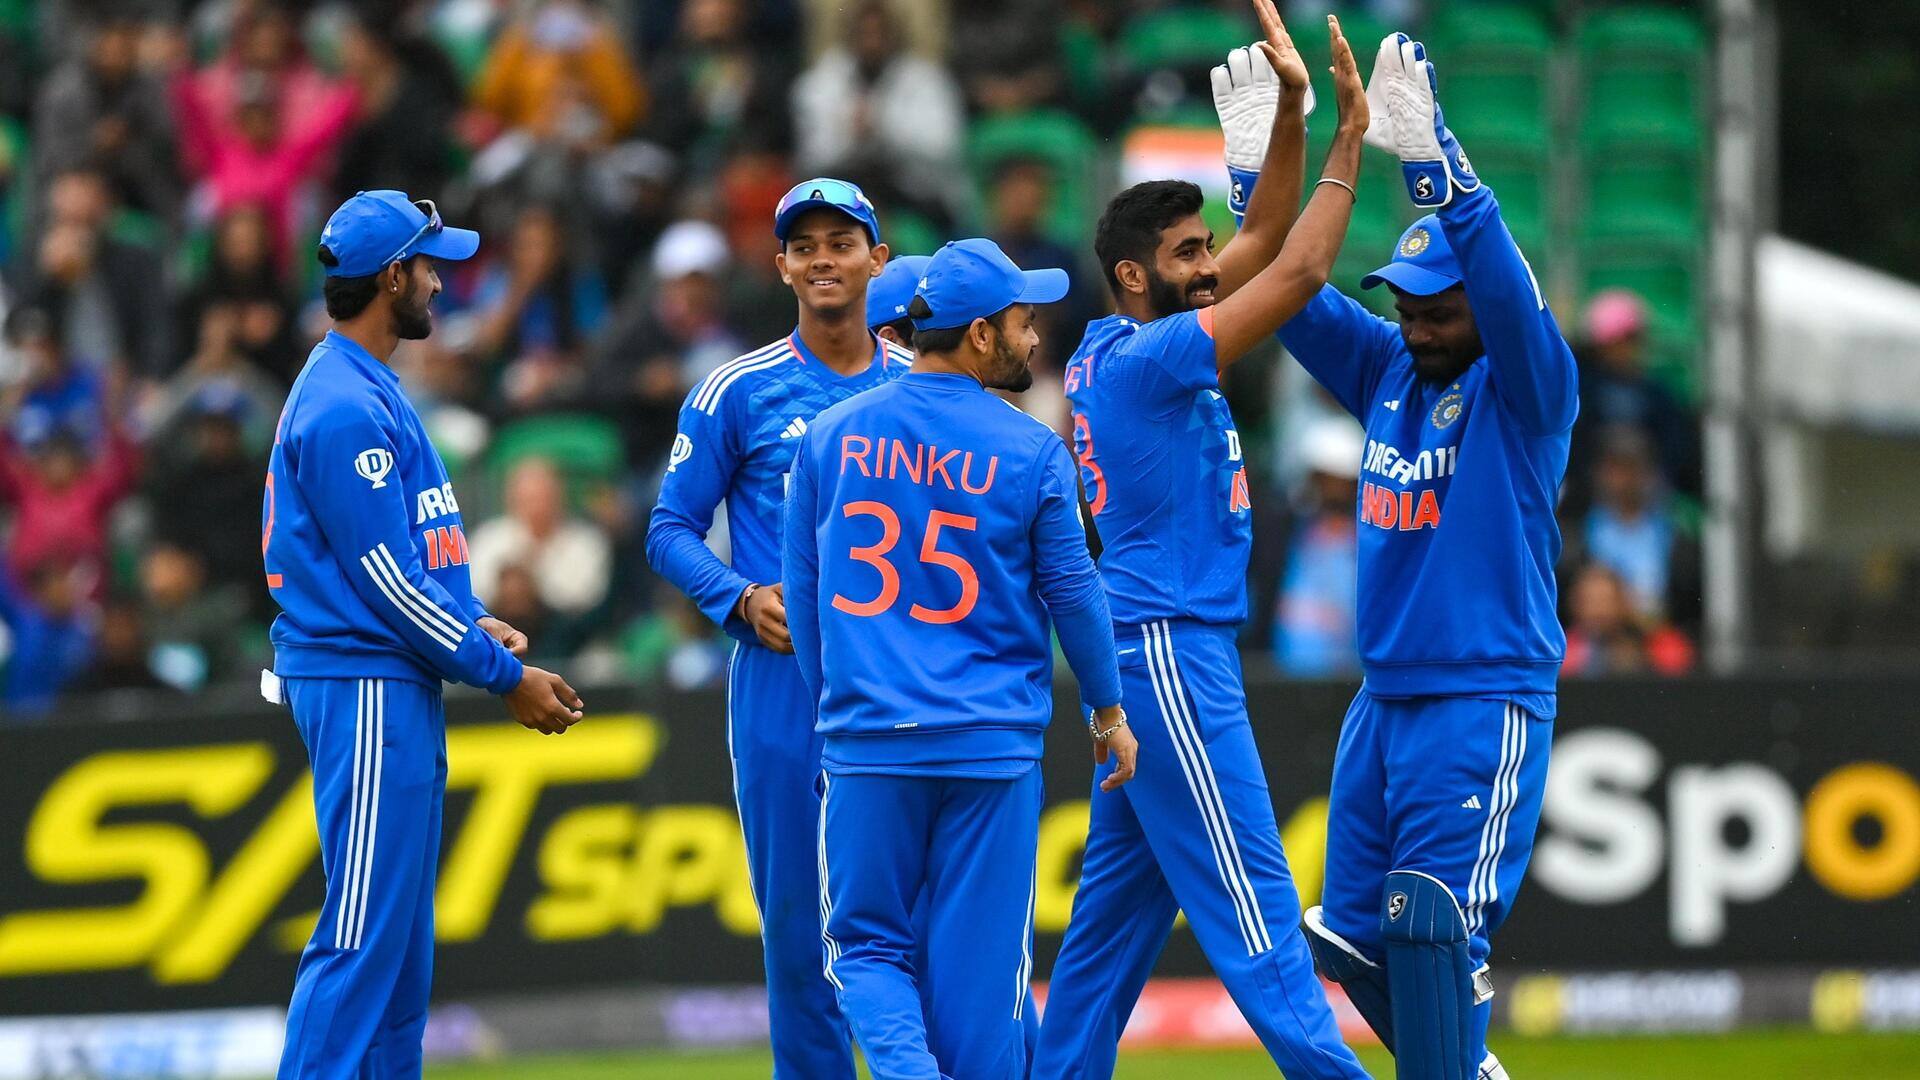 आयरलैंड बनाम भारत: जसप्रीत बुमराह की शानदार वापसी, पहले ही ओवर में चटकाए 2 विकेट